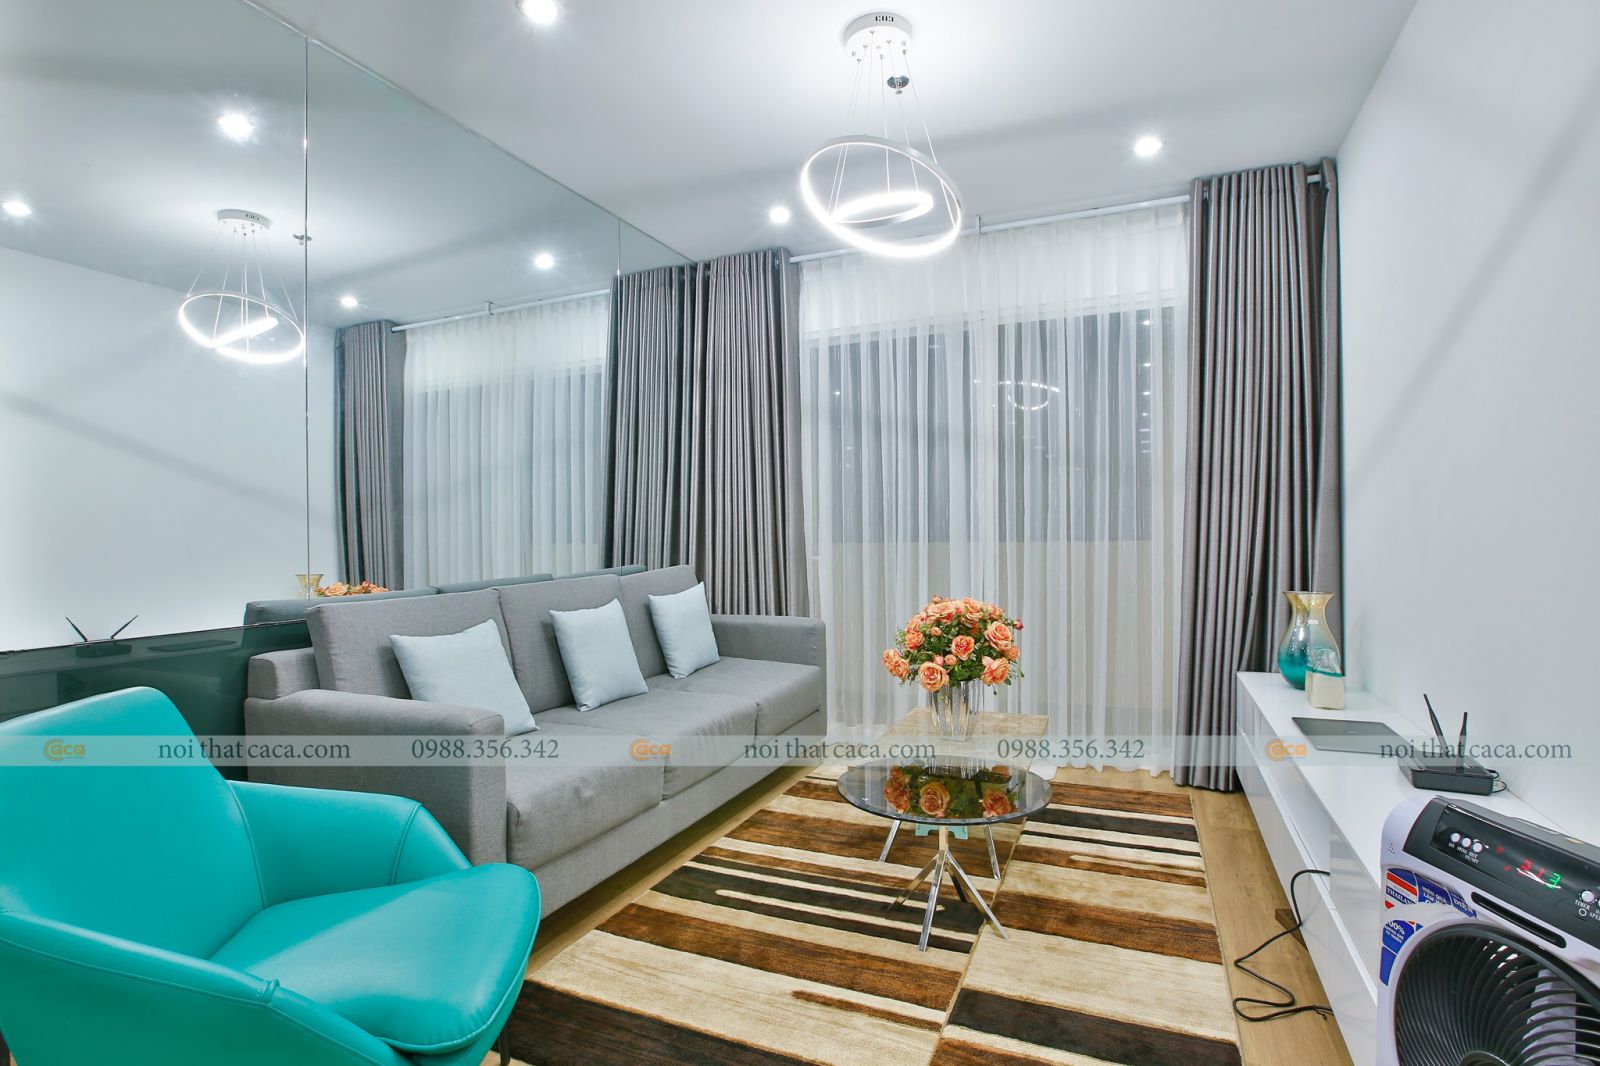 Đồ đạc nội thất hiện đại cho căn hộ chung cư